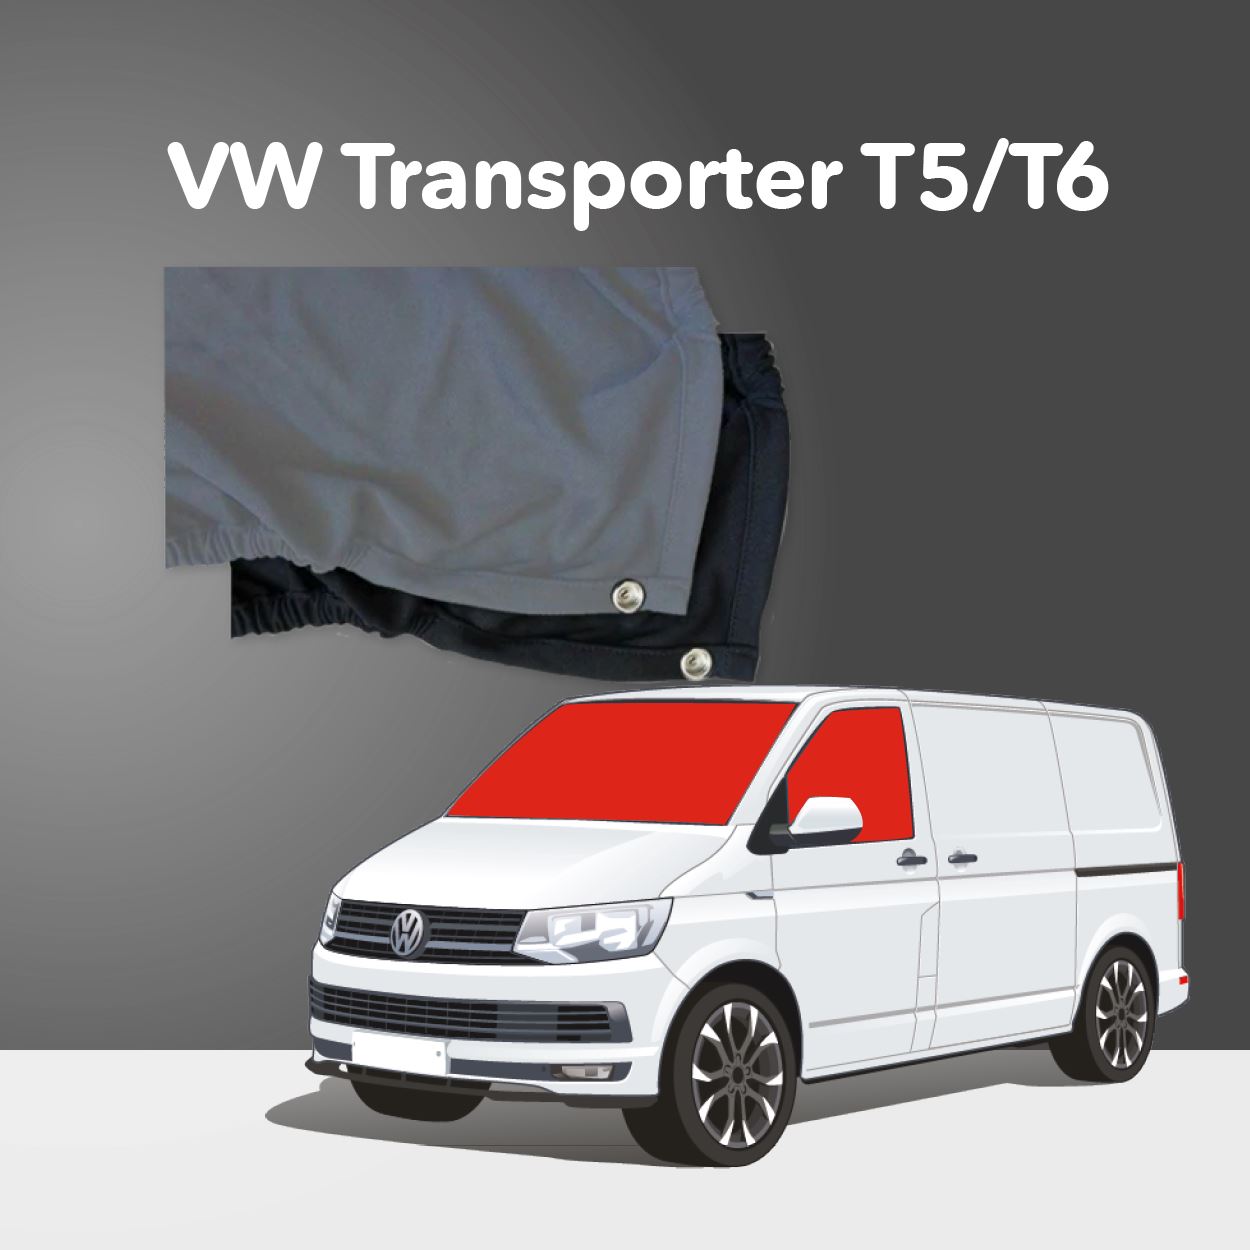 Volet pare brise & vitres & capot - VW Transporter T5 7016-5440  Hindermann7016-5440 - CG10328 